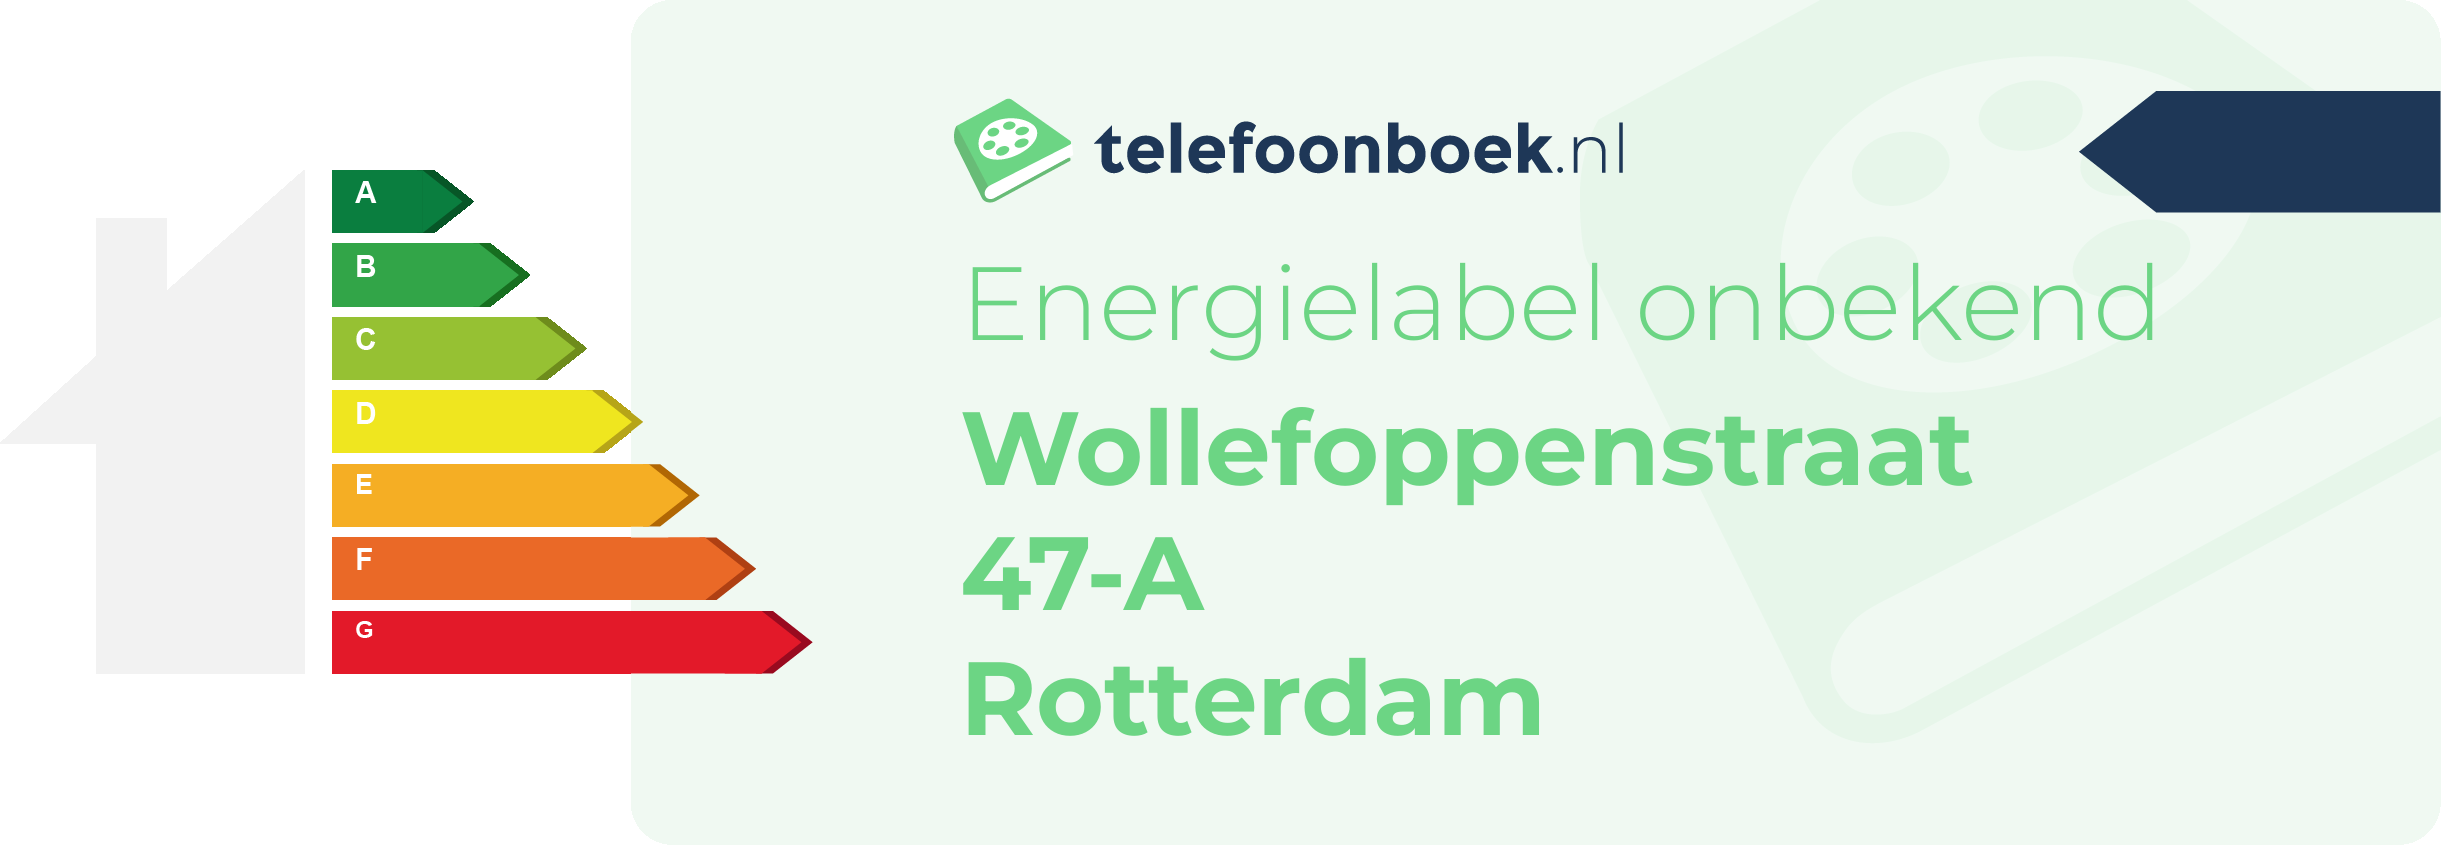 Energielabel Wollefoppenstraat 47-A Rotterdam